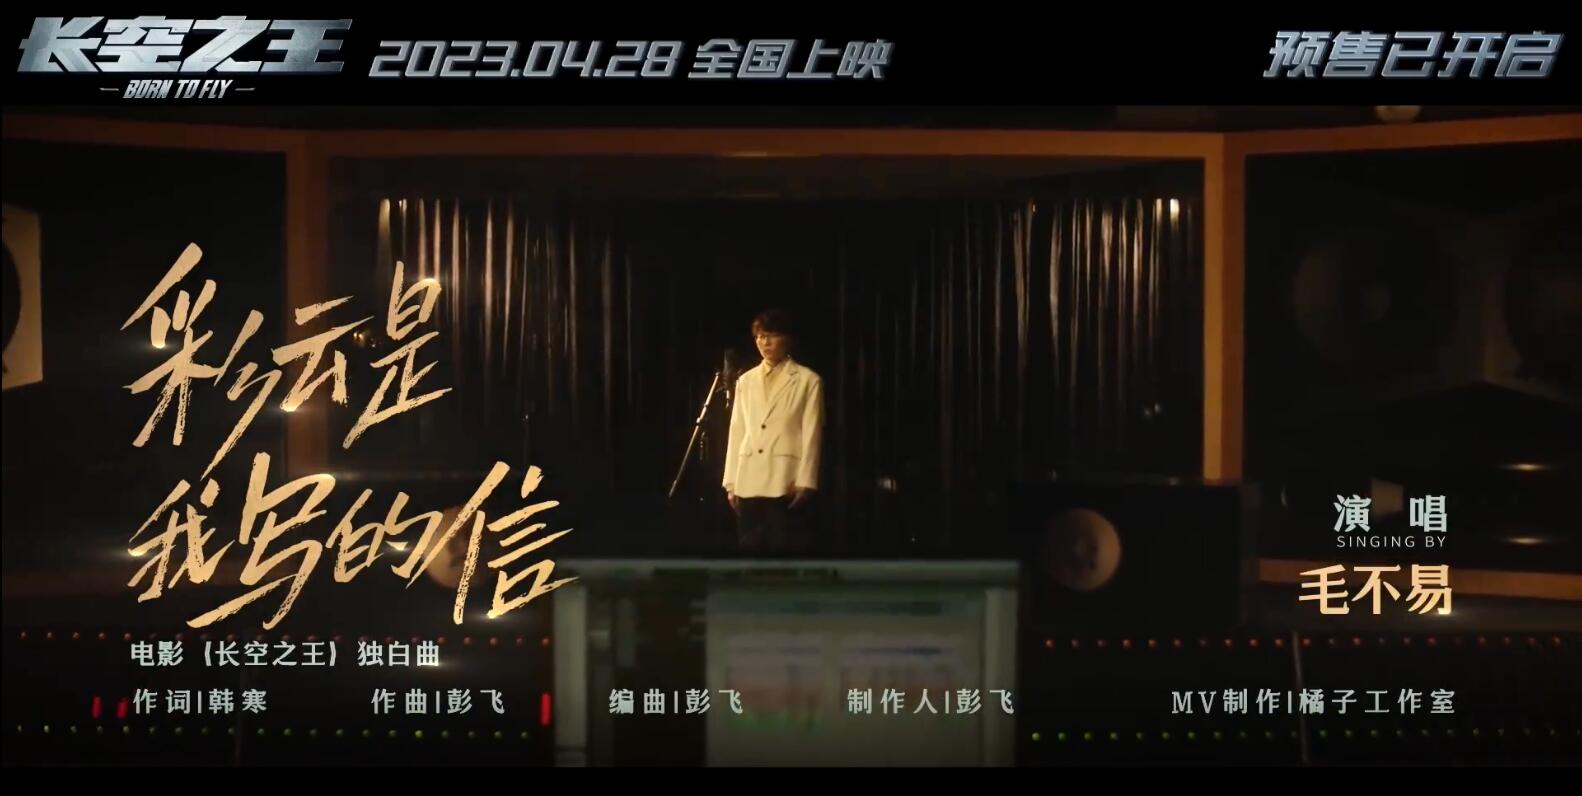 电影《长空之王》发布由毛不易献唱的“独白曲”《彩云是我写的信》MV